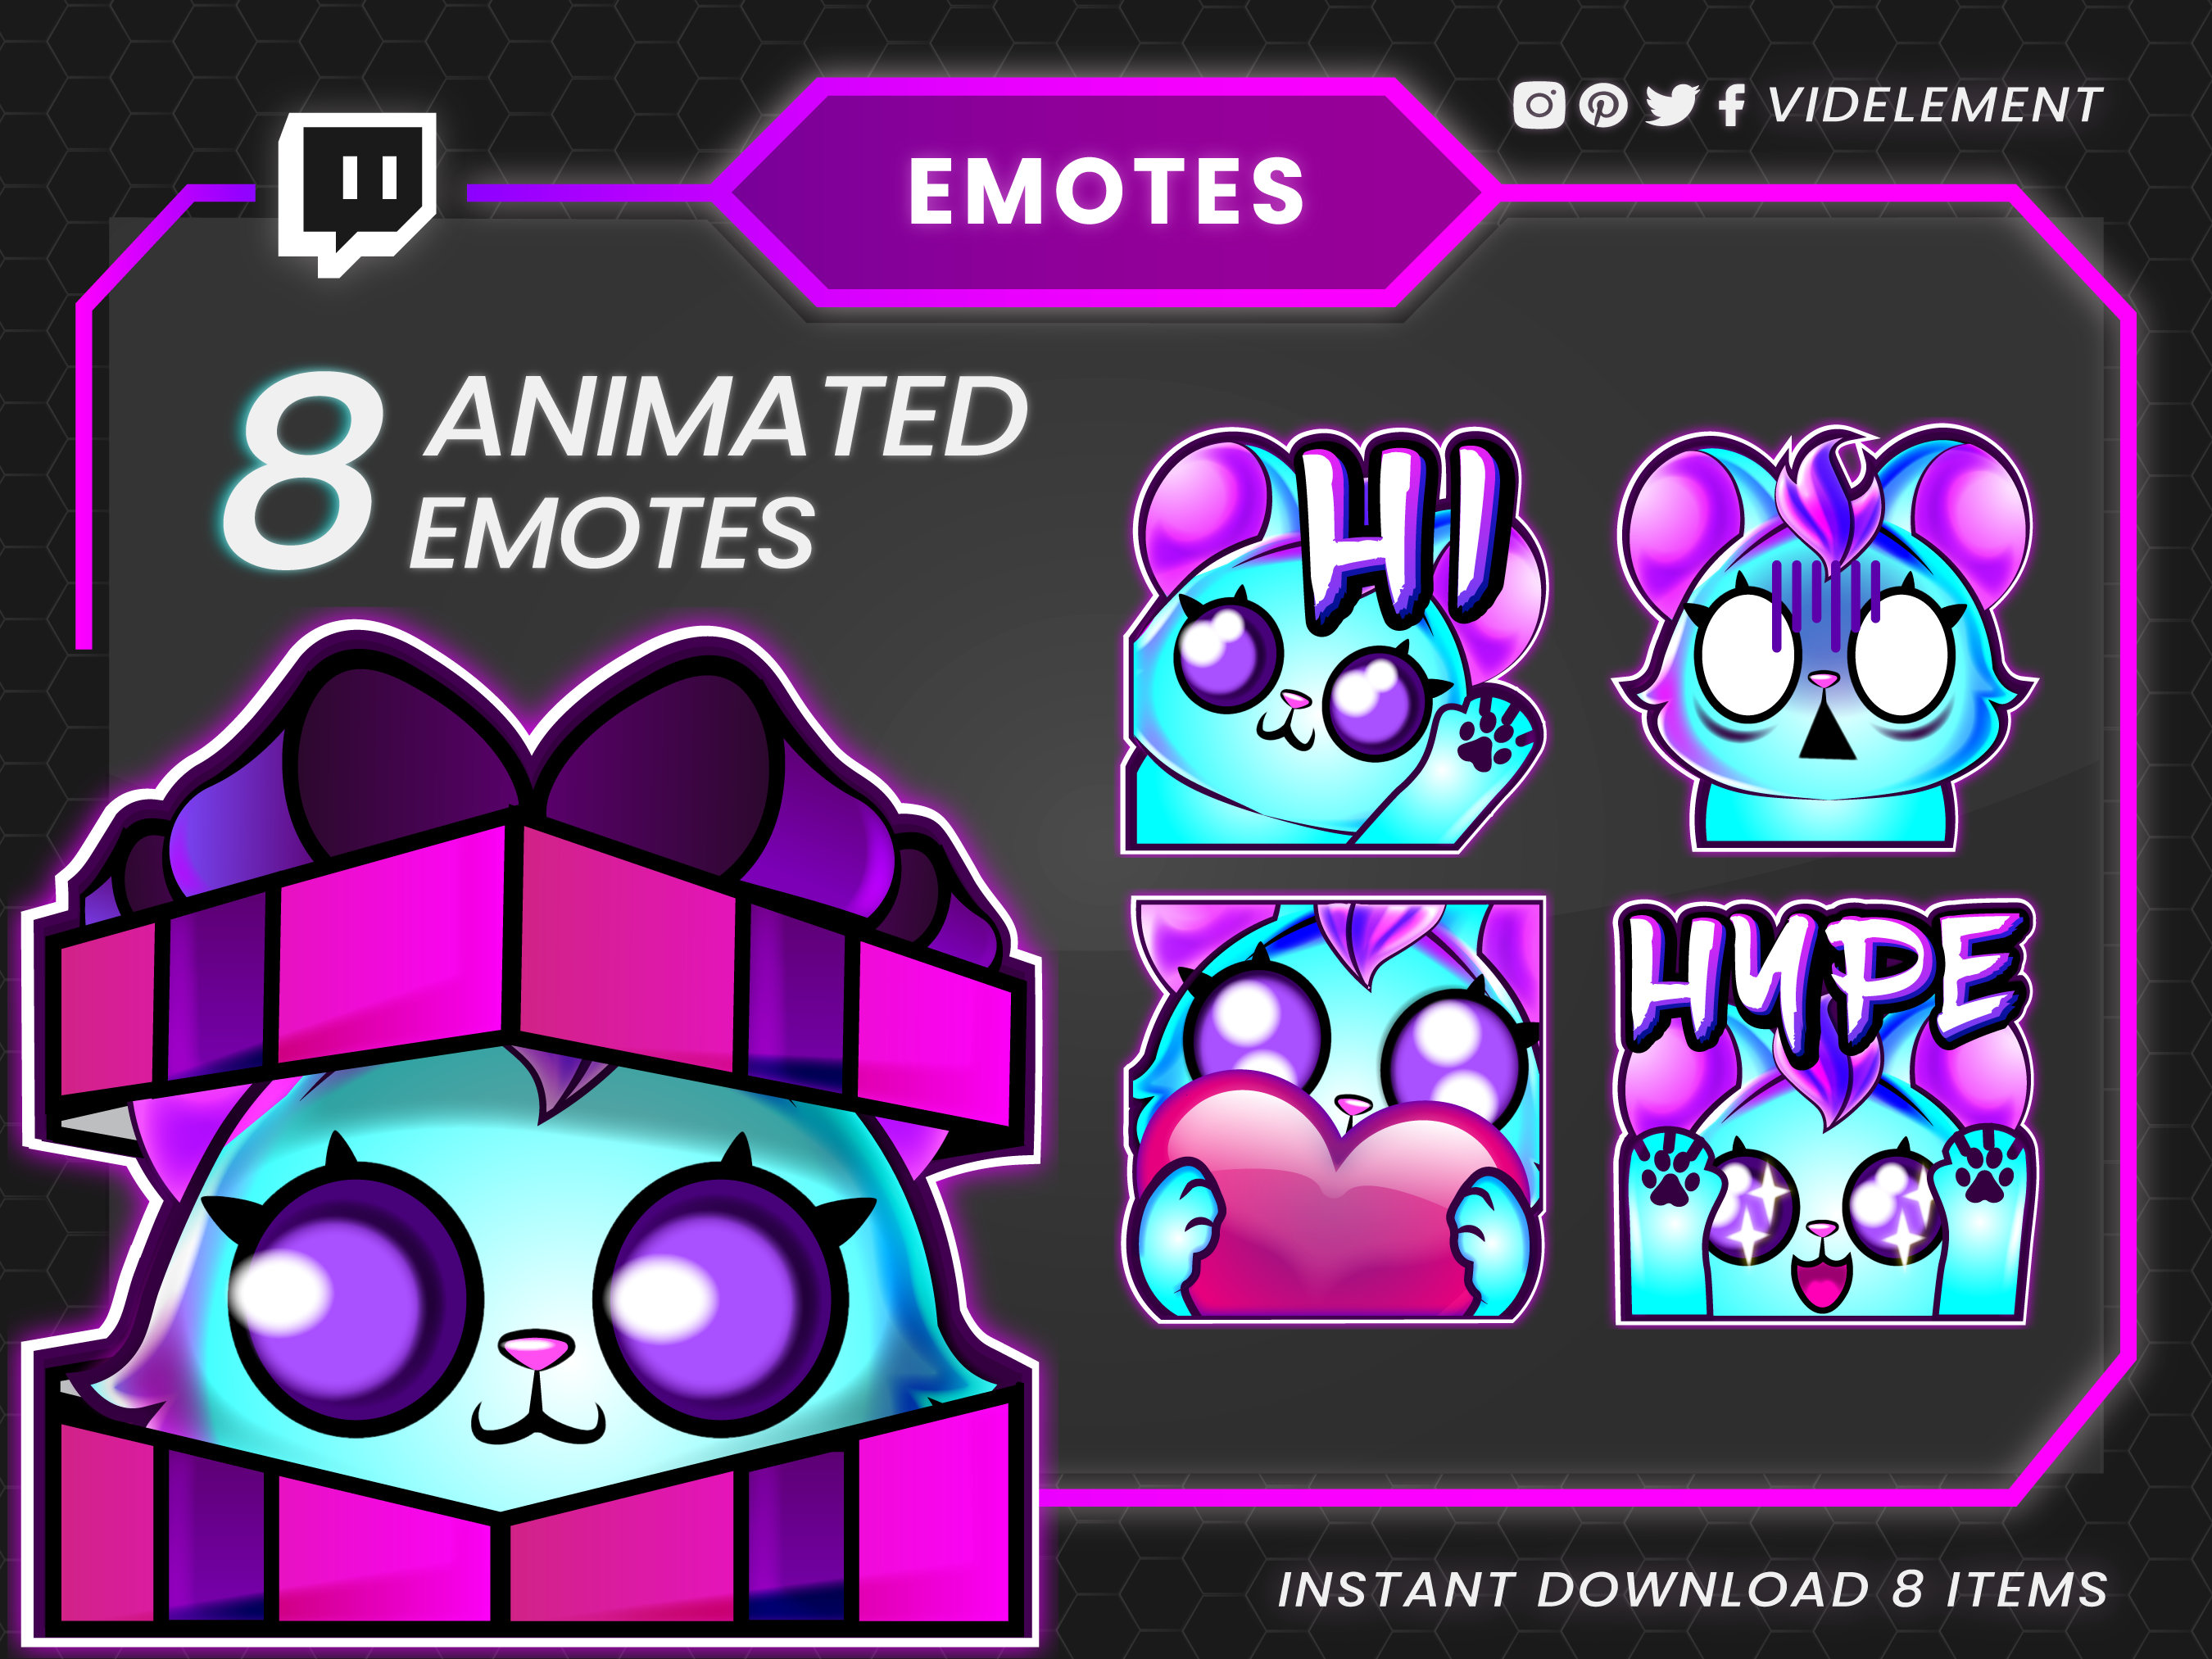 Animated emotes, twitch emotes, discord emotes, twitch sub emotes, Hype ...